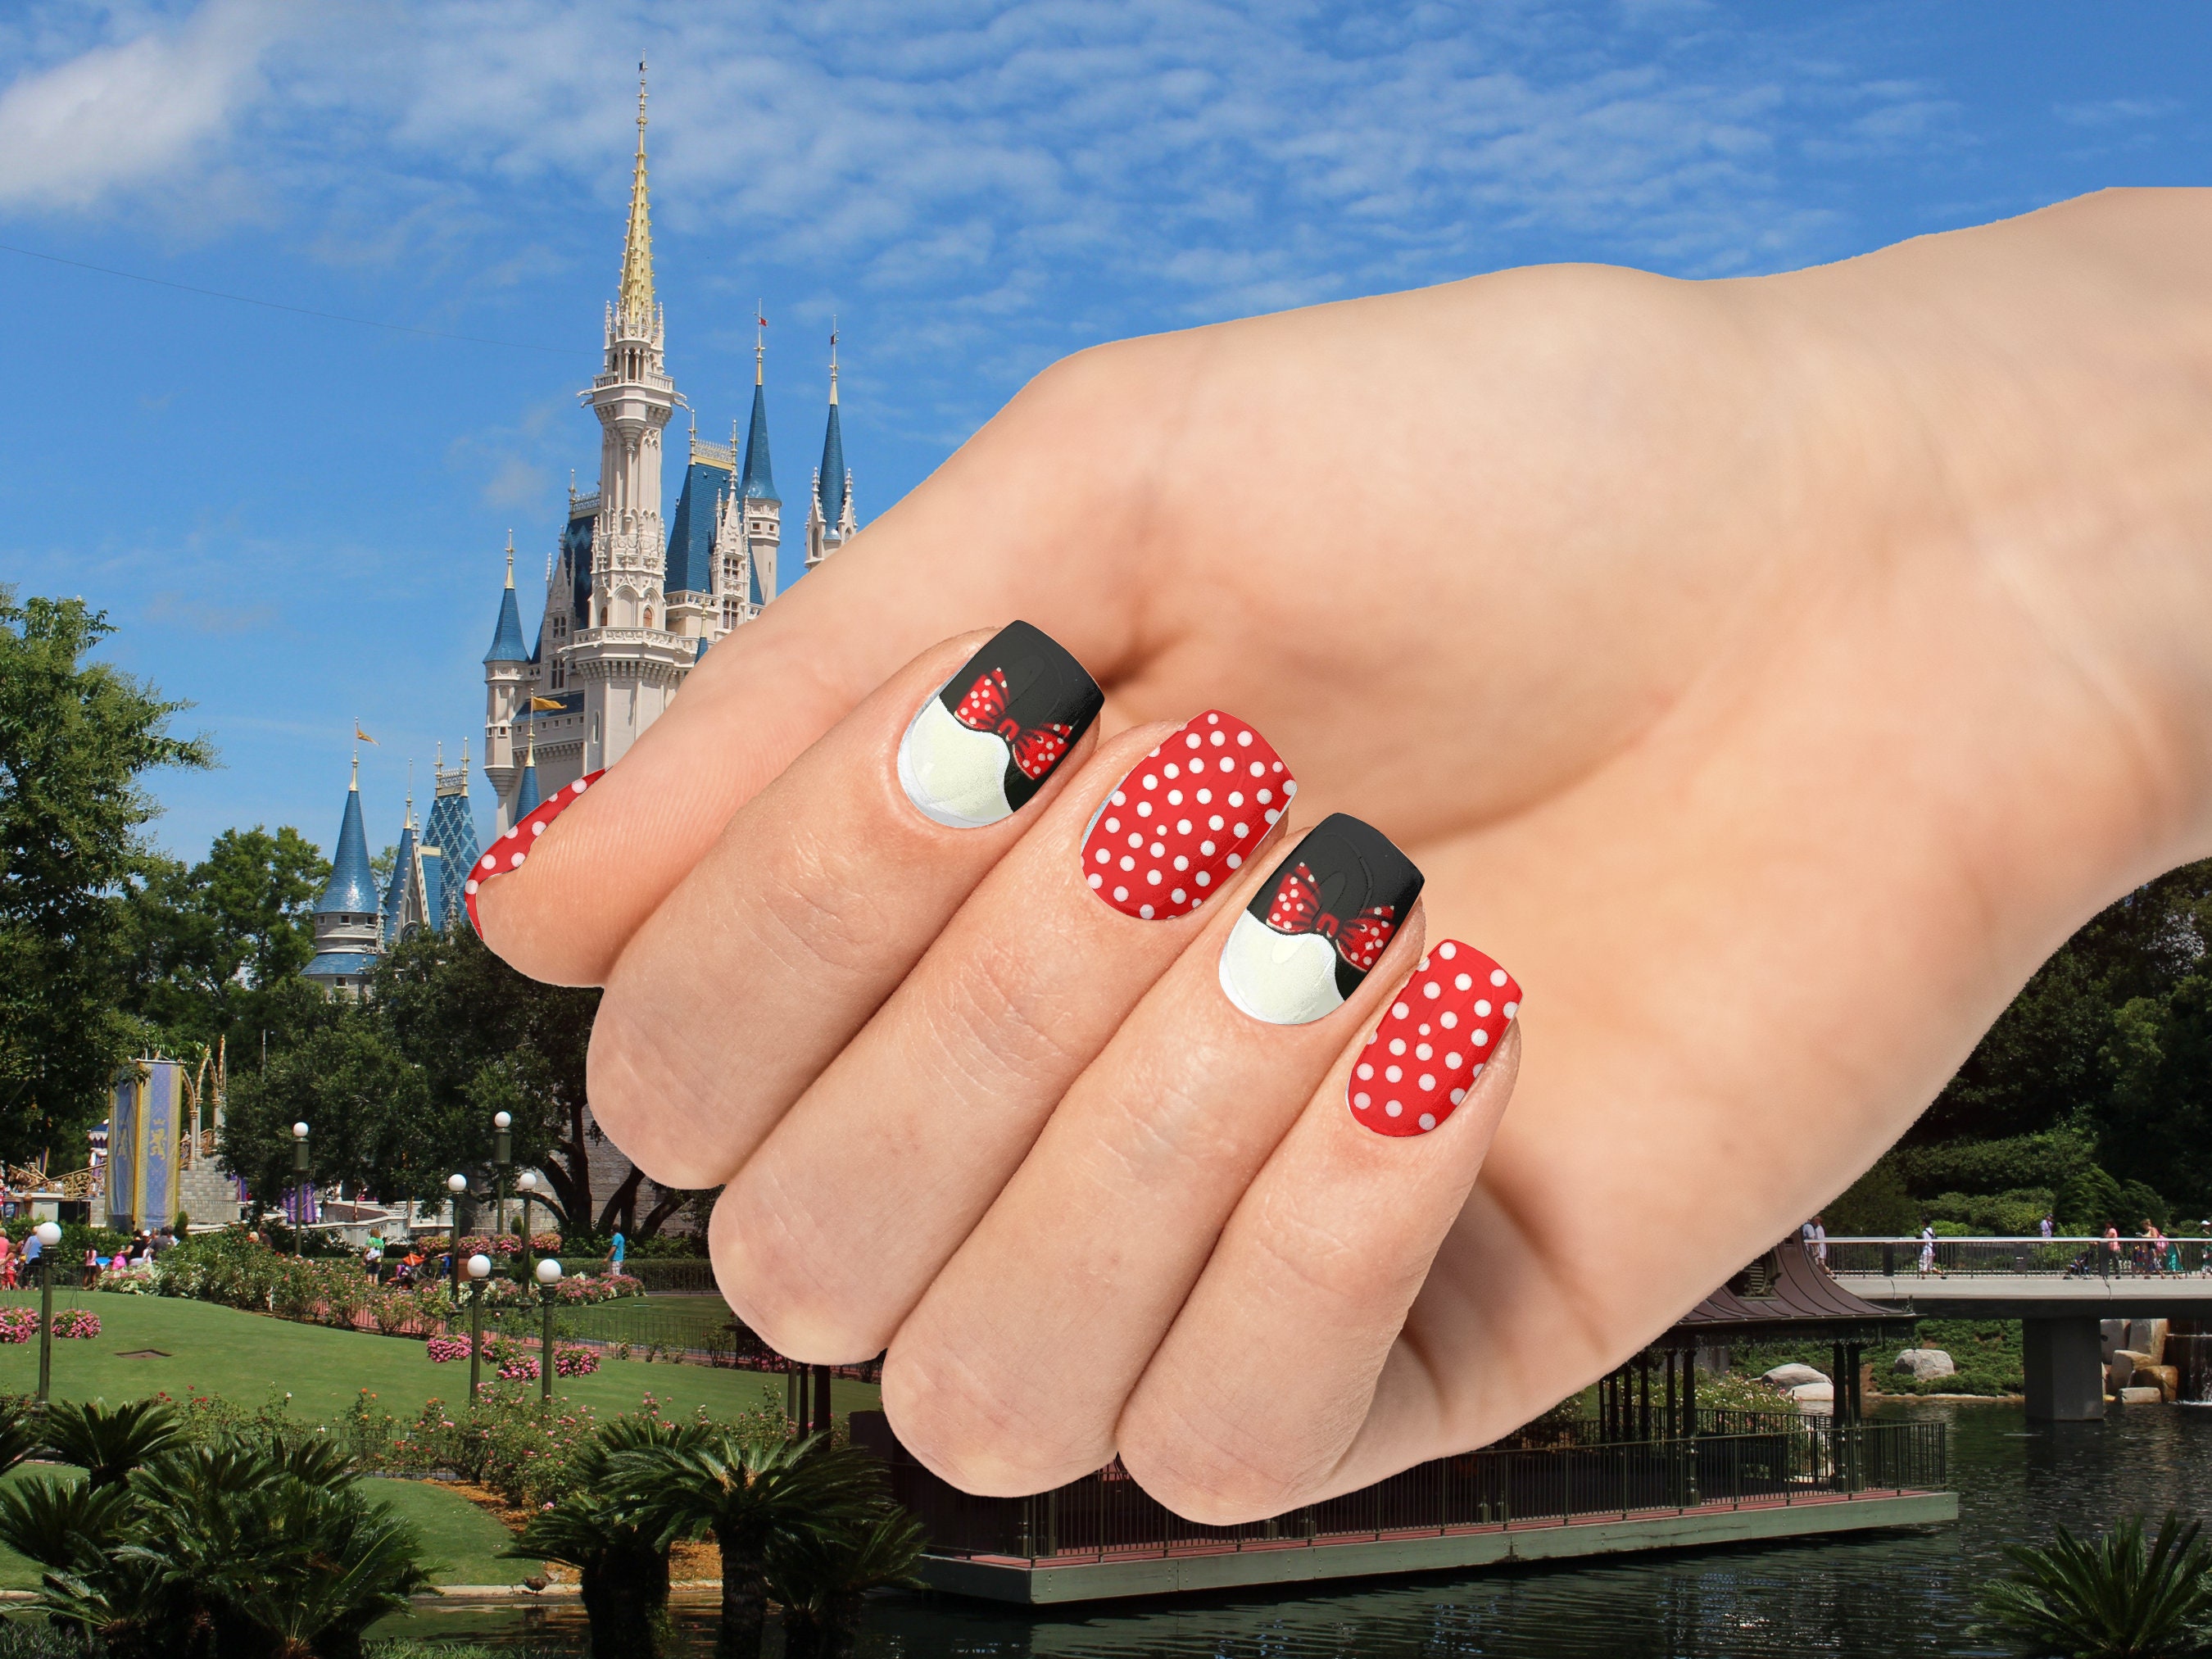 French Minnie Tips Nail Wraps / Disney Nails 